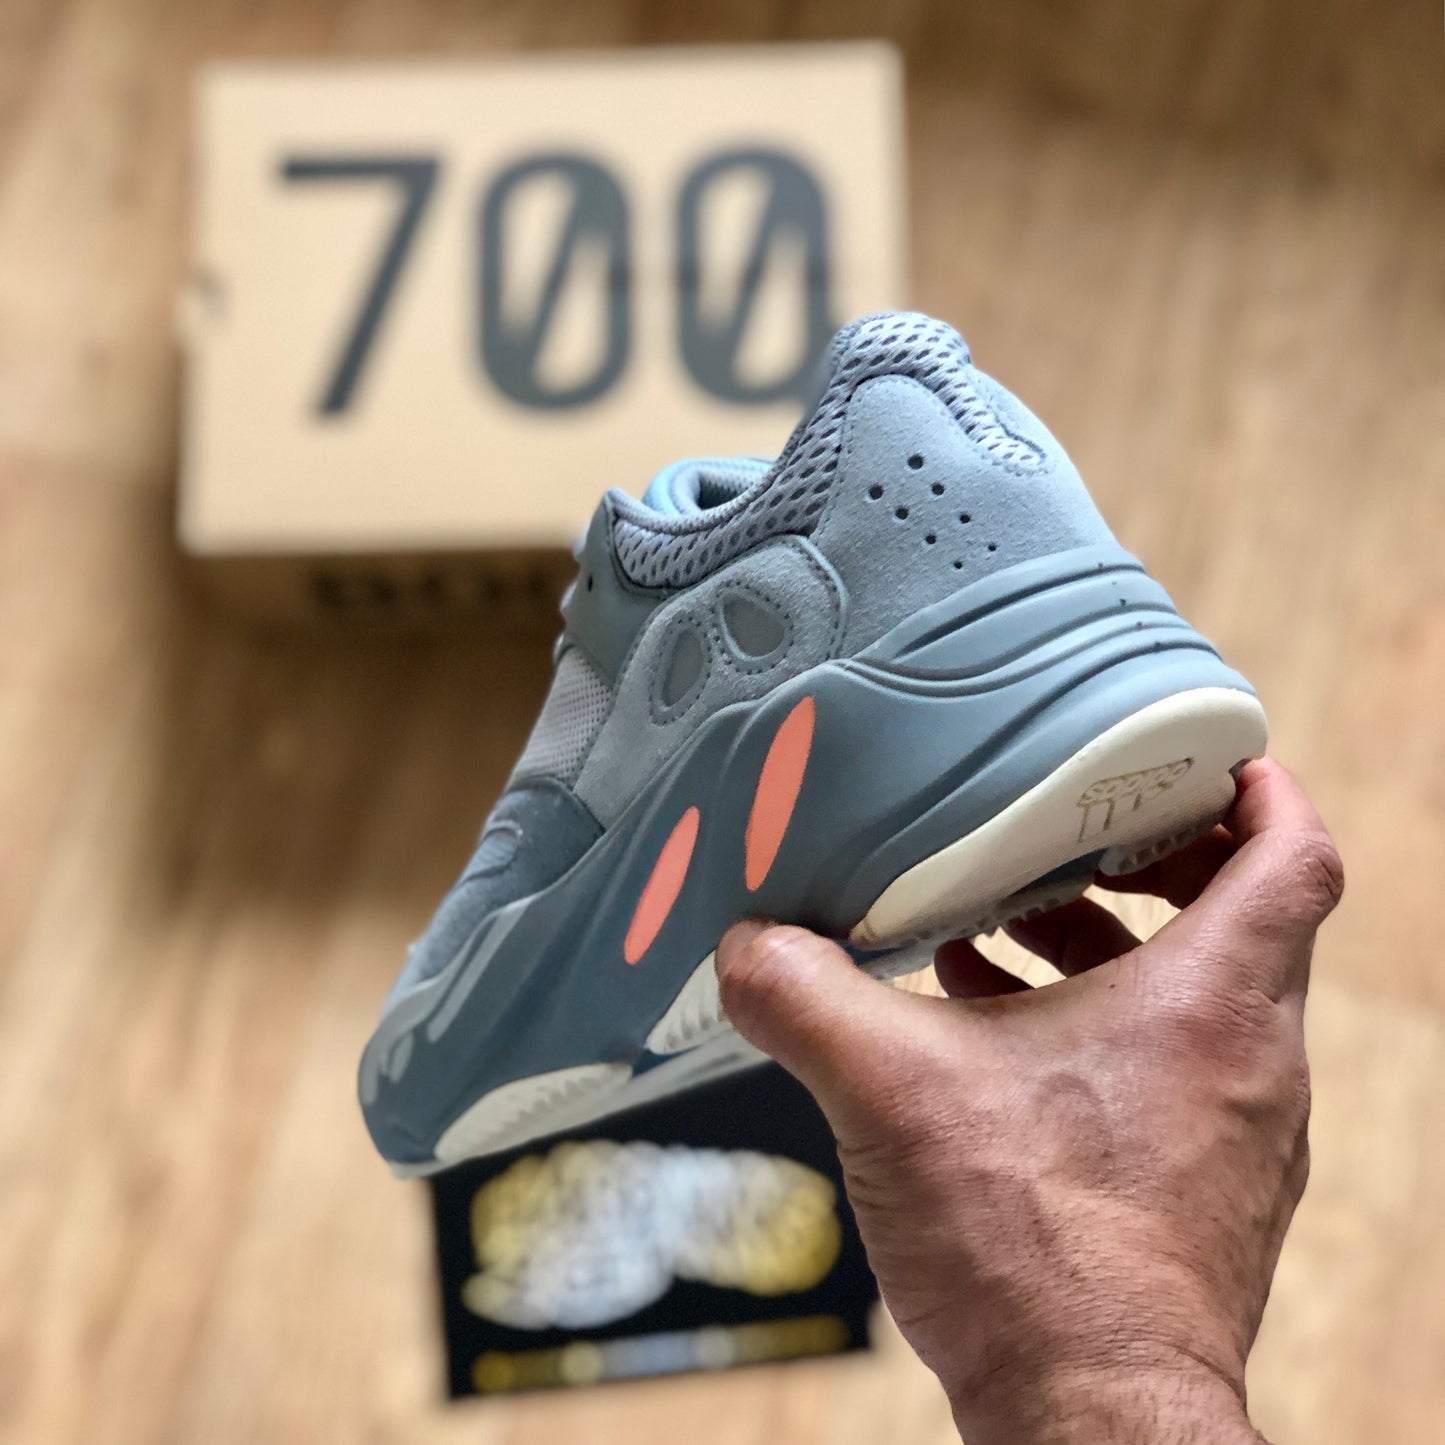 Yeezy Boost 700 - Inertia